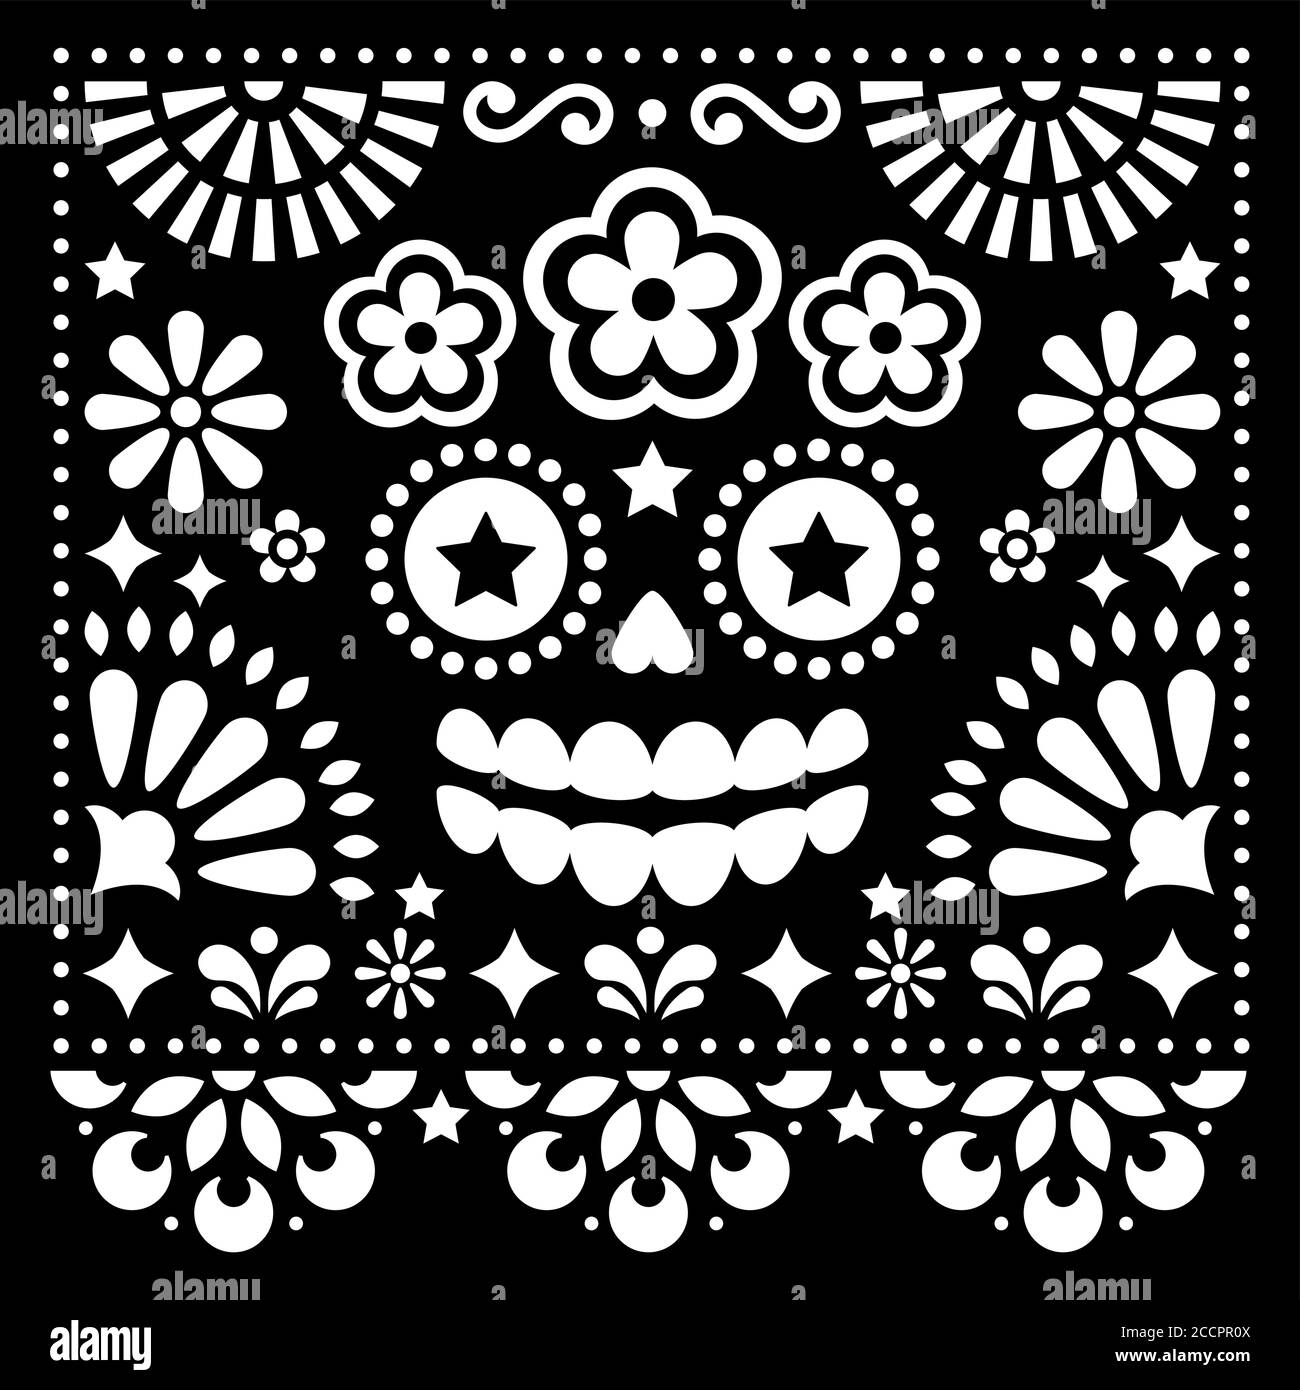 Art folk mexicain vecteur art folk design avec sucre crâne et fleurs, Halloween et le jour des morts motif blanc sur fond noir - carte de voeux Illustration de Vecteur